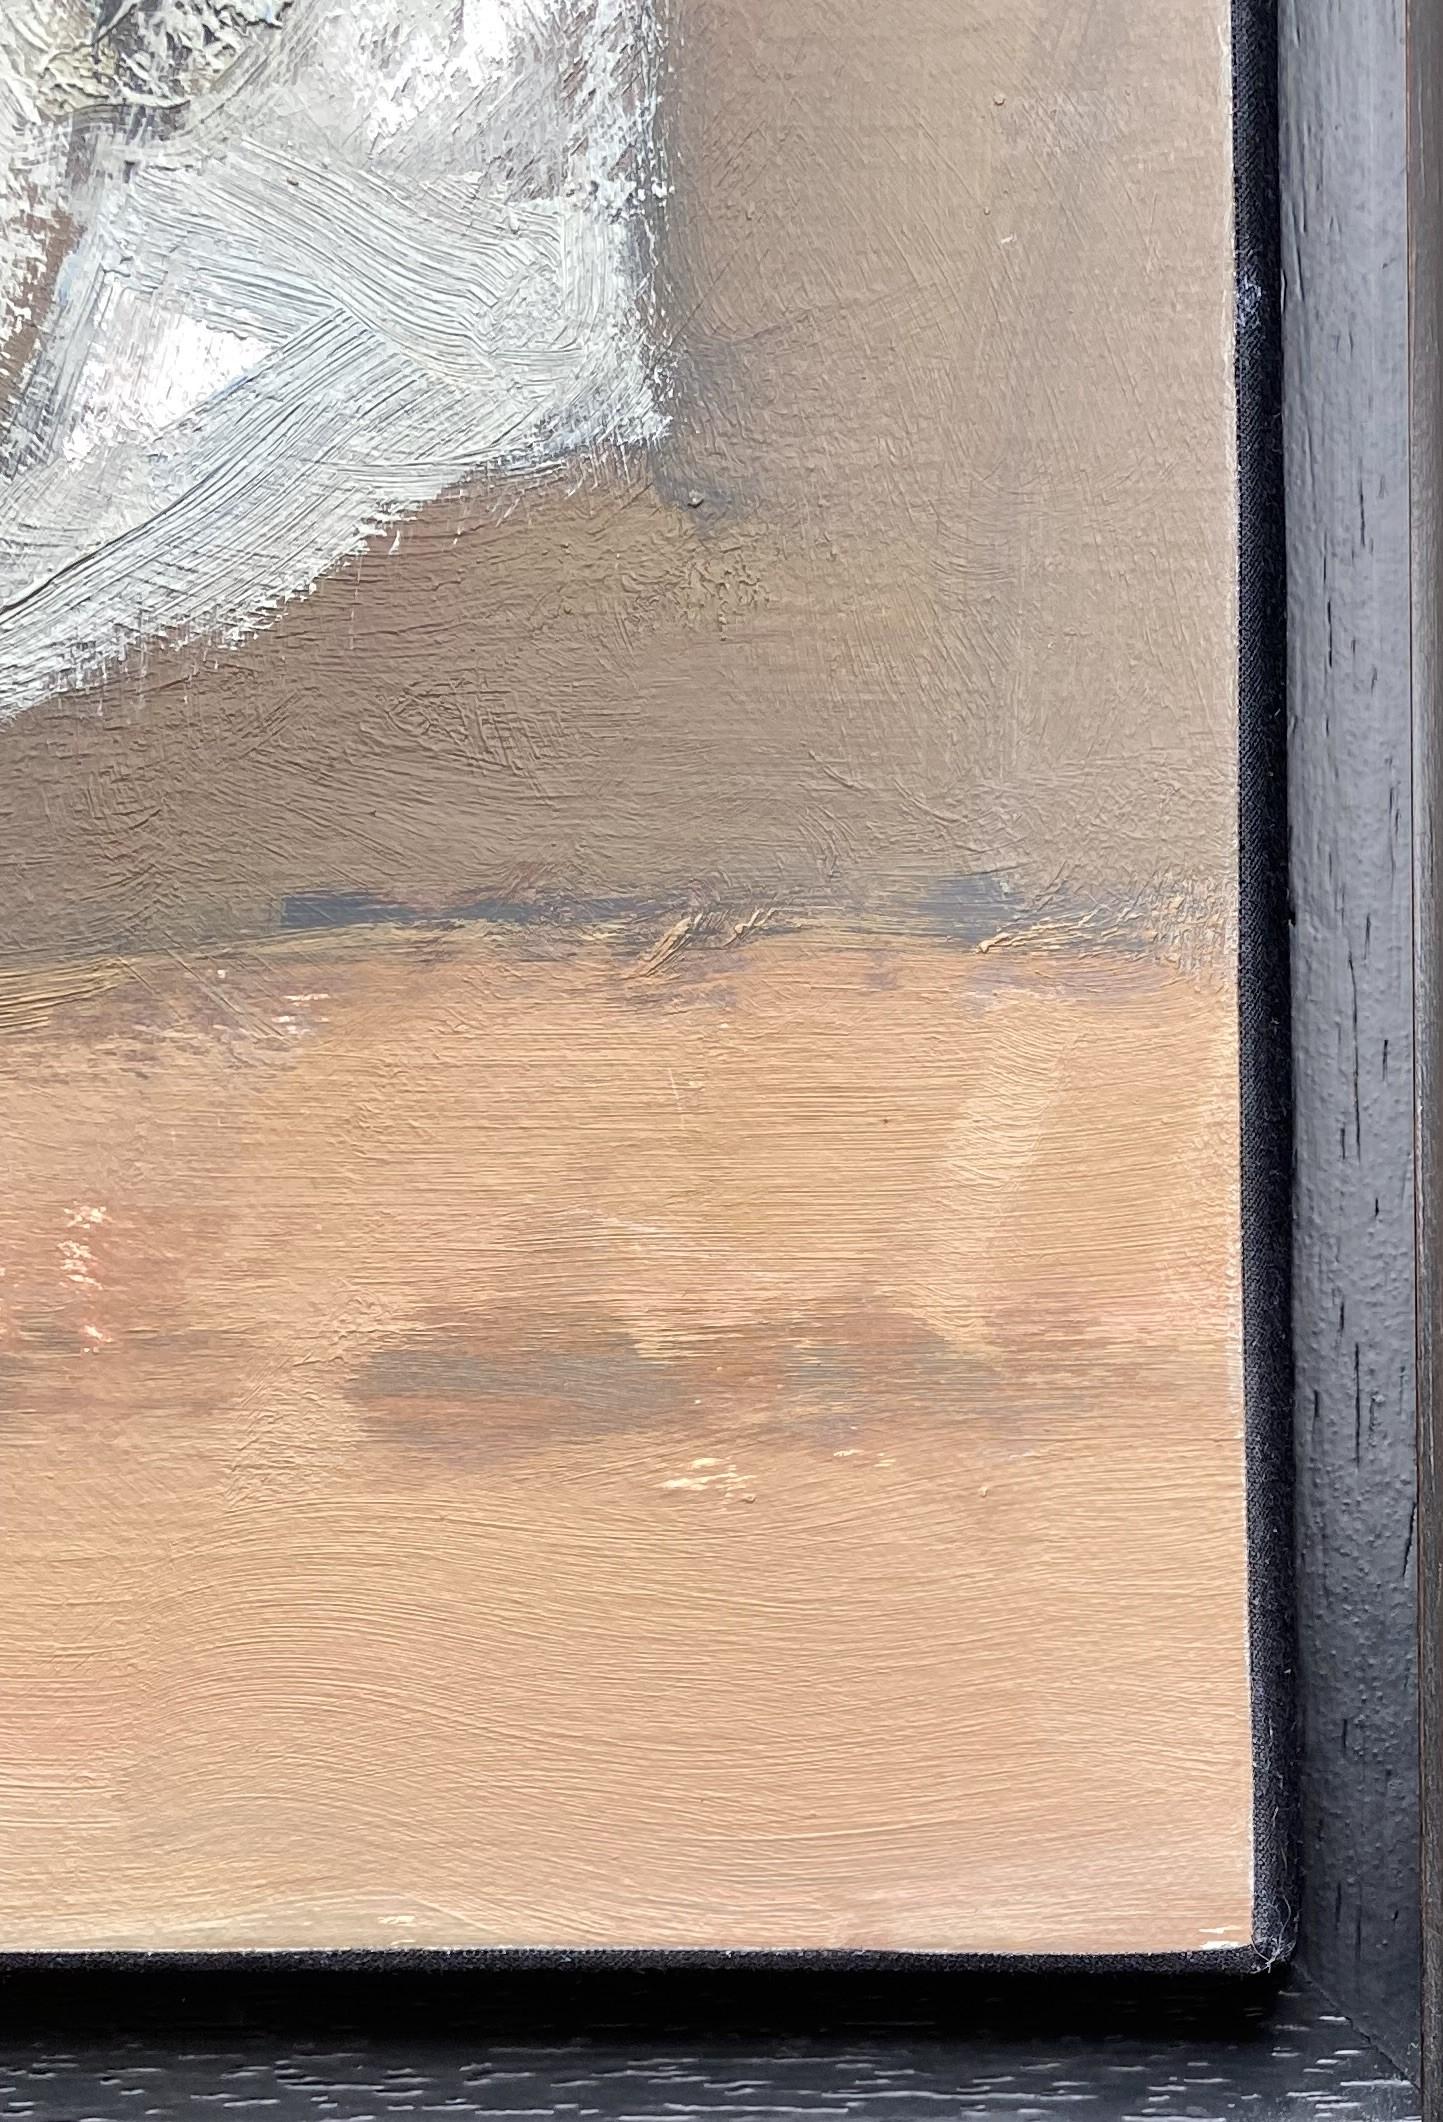 Numéro de référence F371
Cette œuvre est peinte à l'huile sur un papier qui est monté sur une toile et placé dans un châssis en bois fait sur mesure. Il est signé en bas à gauche.
Le tableau n'est pas encadré mais il pourrait l'être avec un cadre